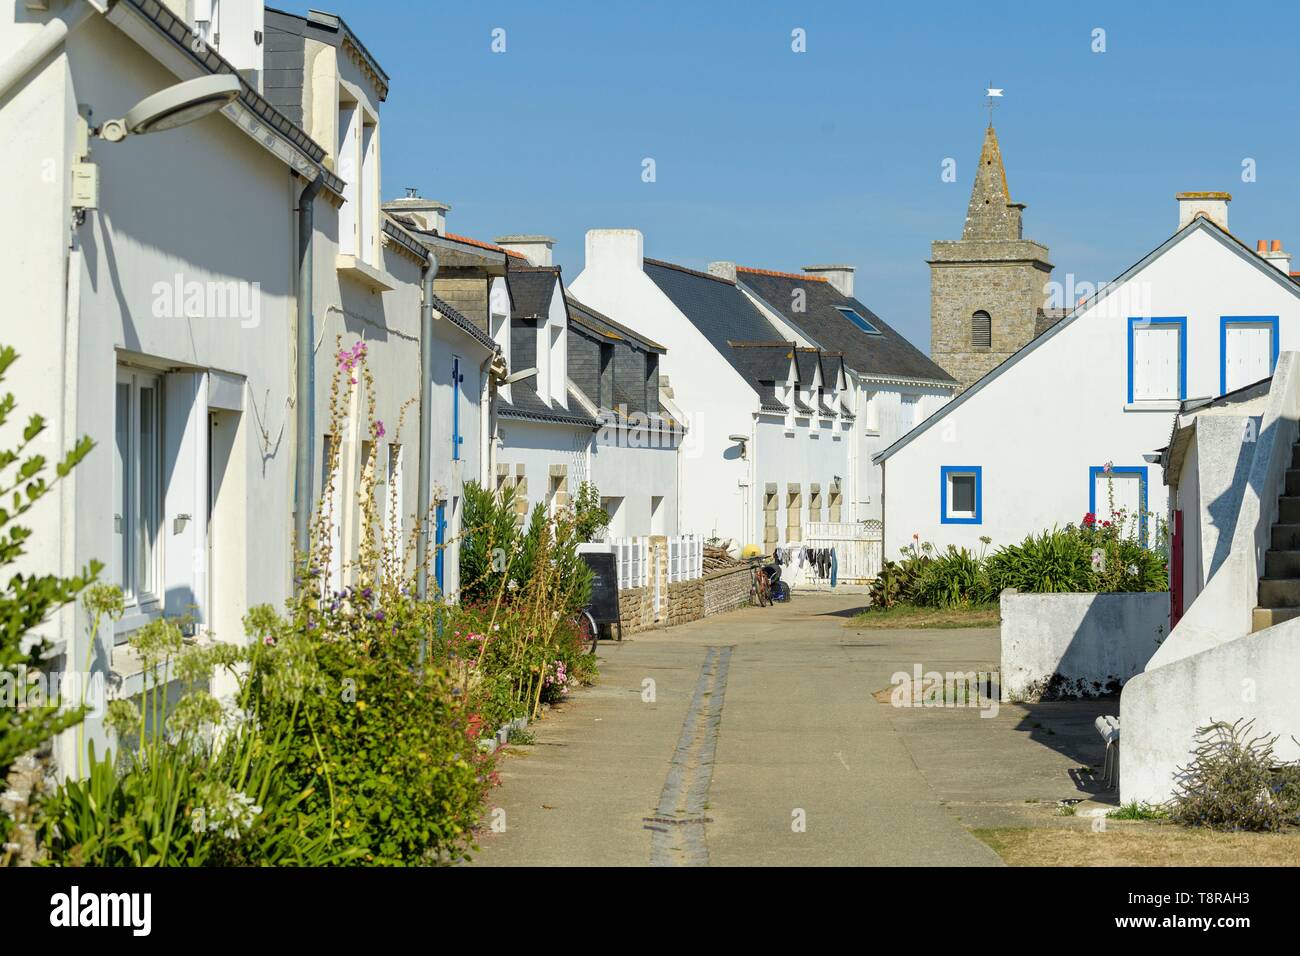 France, Morbihan, Houat, le village et ses maisons typiques Banque D'Images